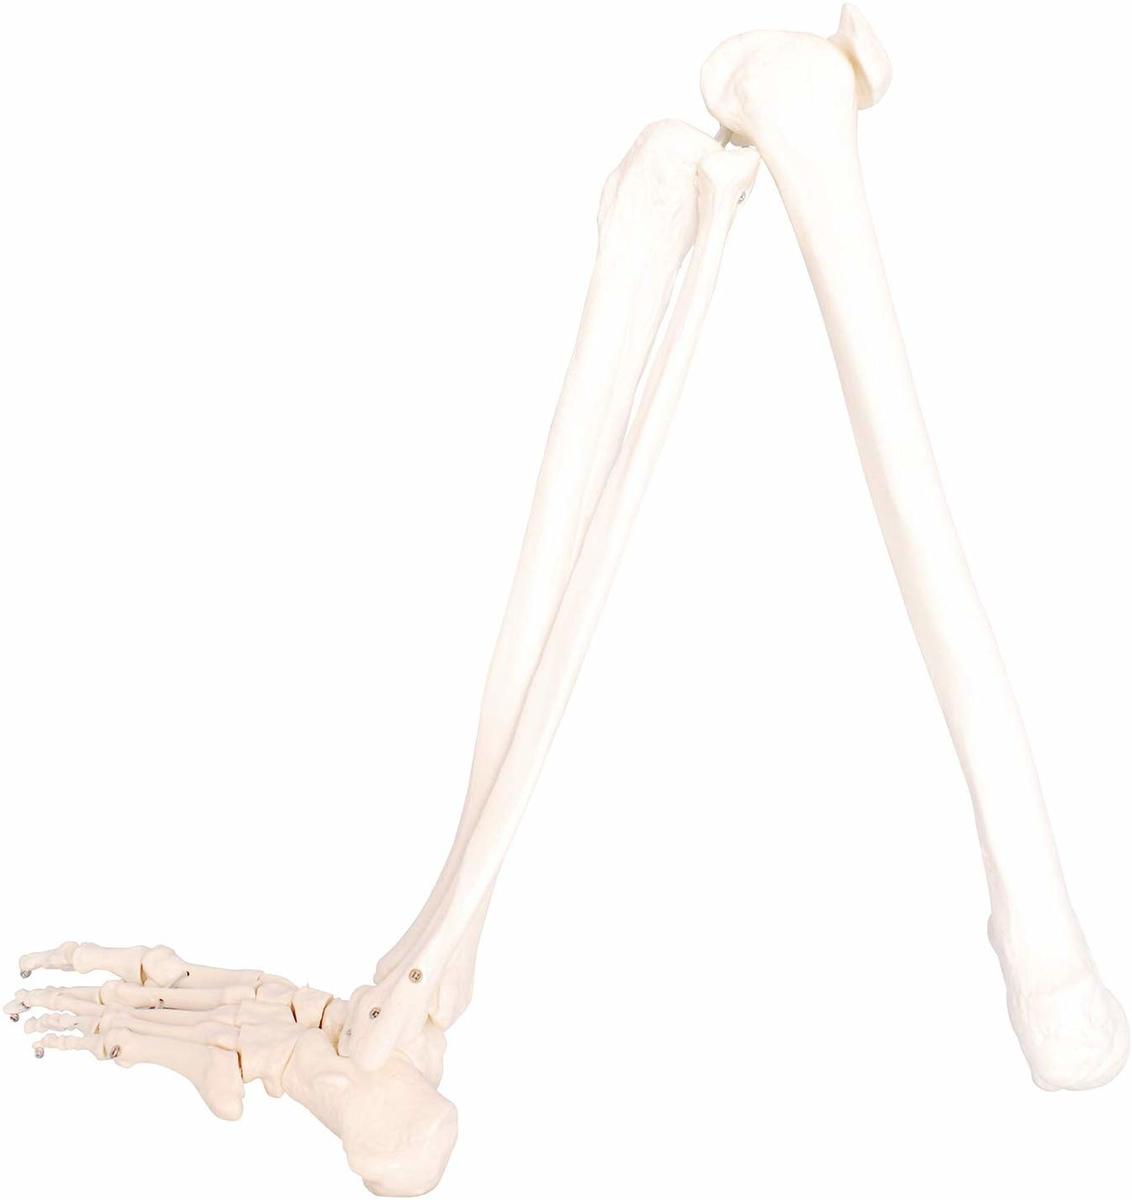 足骨模型として希少な左足モデル 人体模型 下肢骨 大腿骨 返品不可 脛骨 足骨 86cm モデル 国内正規総代理店アイテム ワイヤーつなぎ 左足 等身大 模型